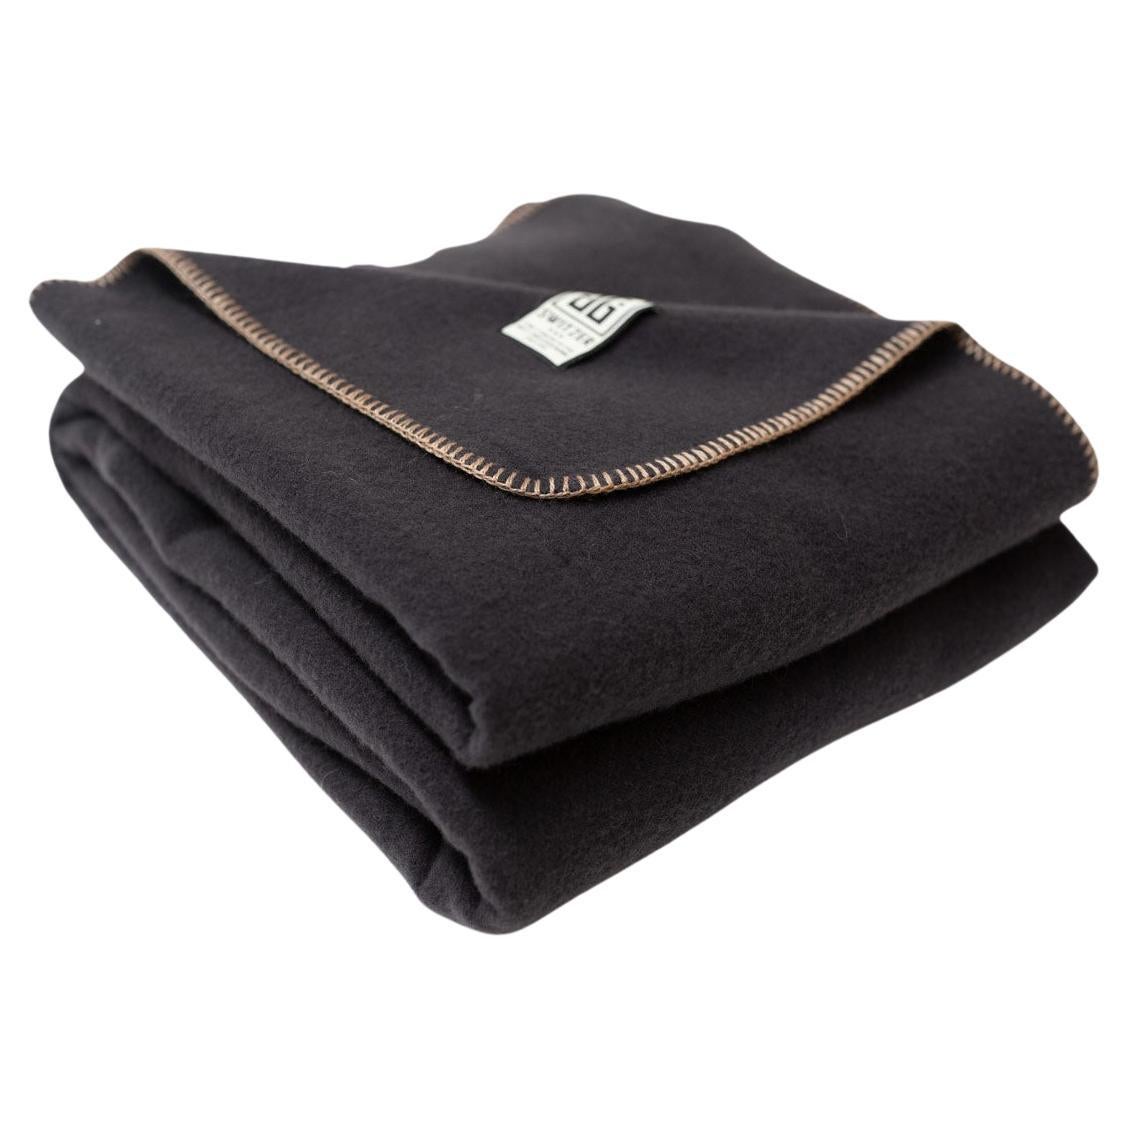 JG Classic Blanket 100% Merino Wool in Bark - Queen For Sale